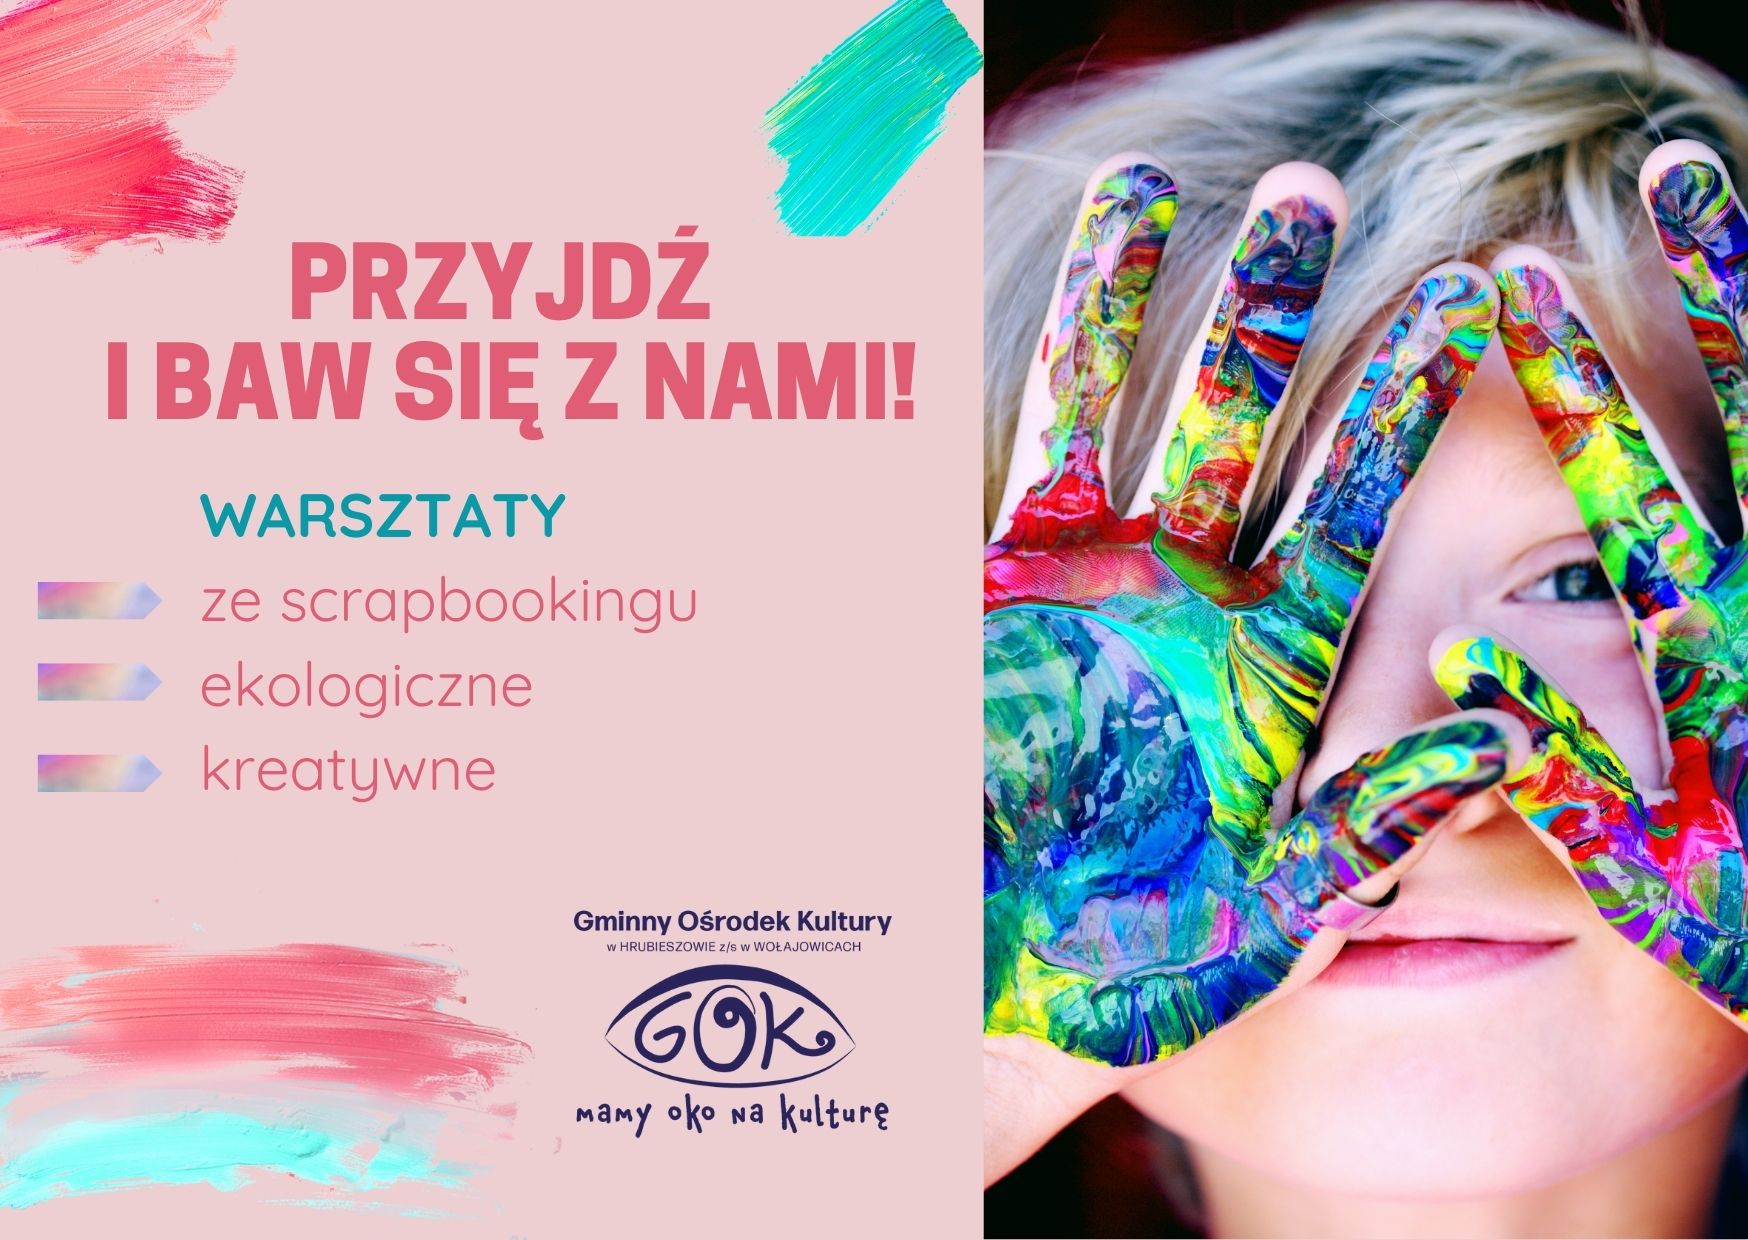 Grafika przedstawia zdjęcie dziewczynki z pomalowanymi na kolorowo dłońmi oraz tekst: "Przyjdź i baw się z nami  - warsztaty ze scrapbookingu, ekologiczne, kreatywne. Na grafice znajduje się logo GOK. 